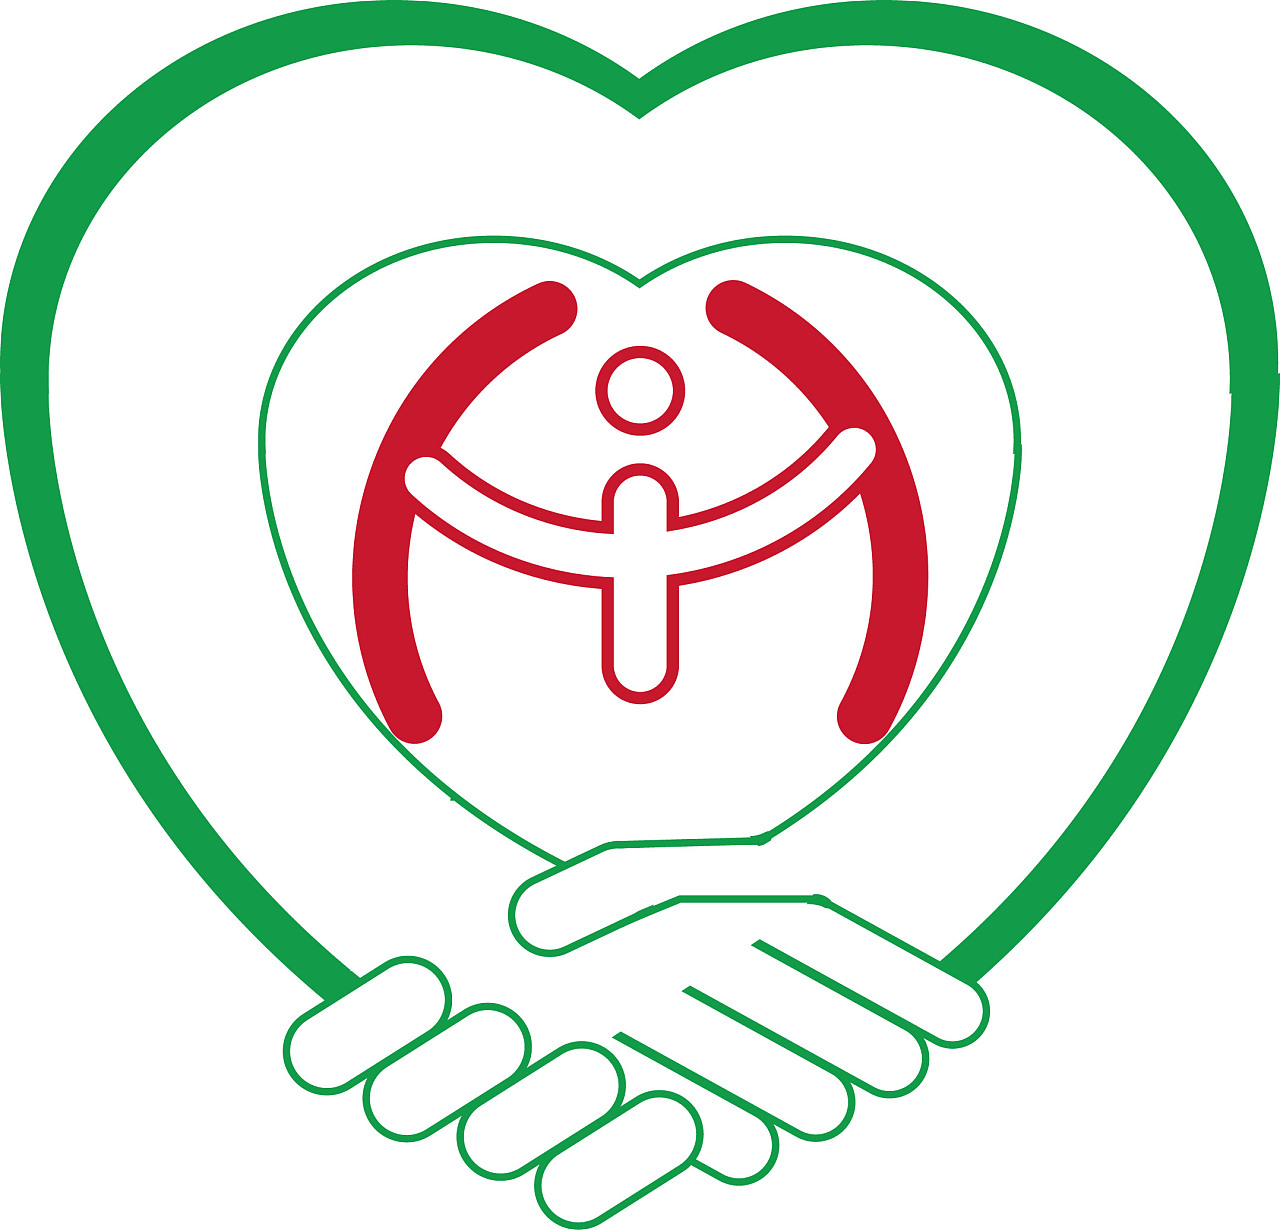 ui设计师 个人独立完成的logo设计   logo体现了医院细节护理,团队